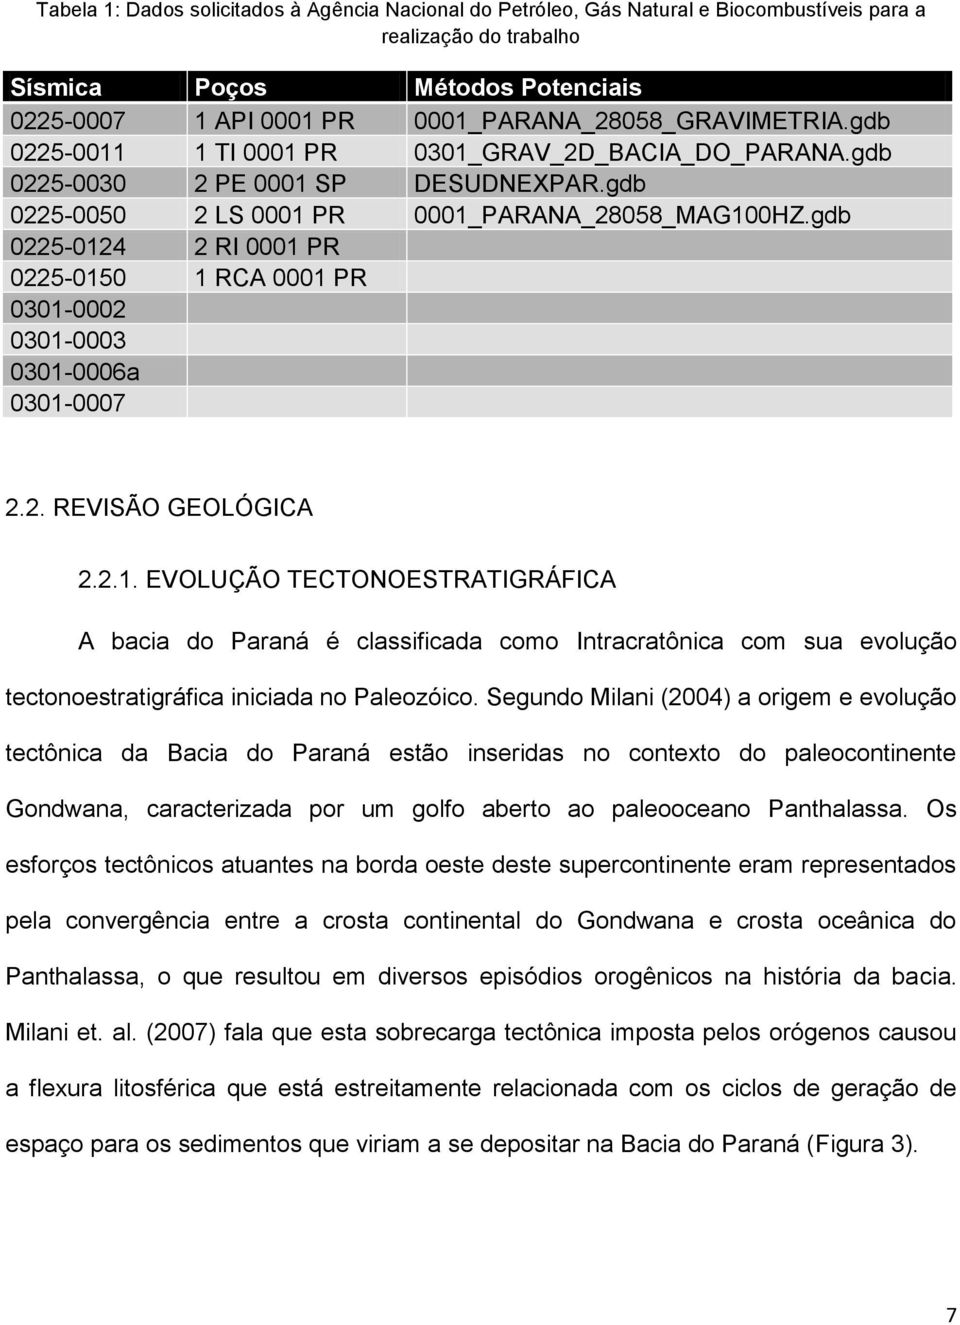 gdb 0225-0124 2 RI 0001 PR 0225-0150 1 RCA 0001 PR 0301-0002 0301-0003 0301-0006a 0301-0007 2.2. REVISÃO GEOLÓGICA 2.2.1. EVOLUÇÃO TECTONOESTRATIGRÁFICA A bacia do Paraná é classificada como Intracratônica com sua evolução tectonoestratigráfica iniciada no Paleozóico.